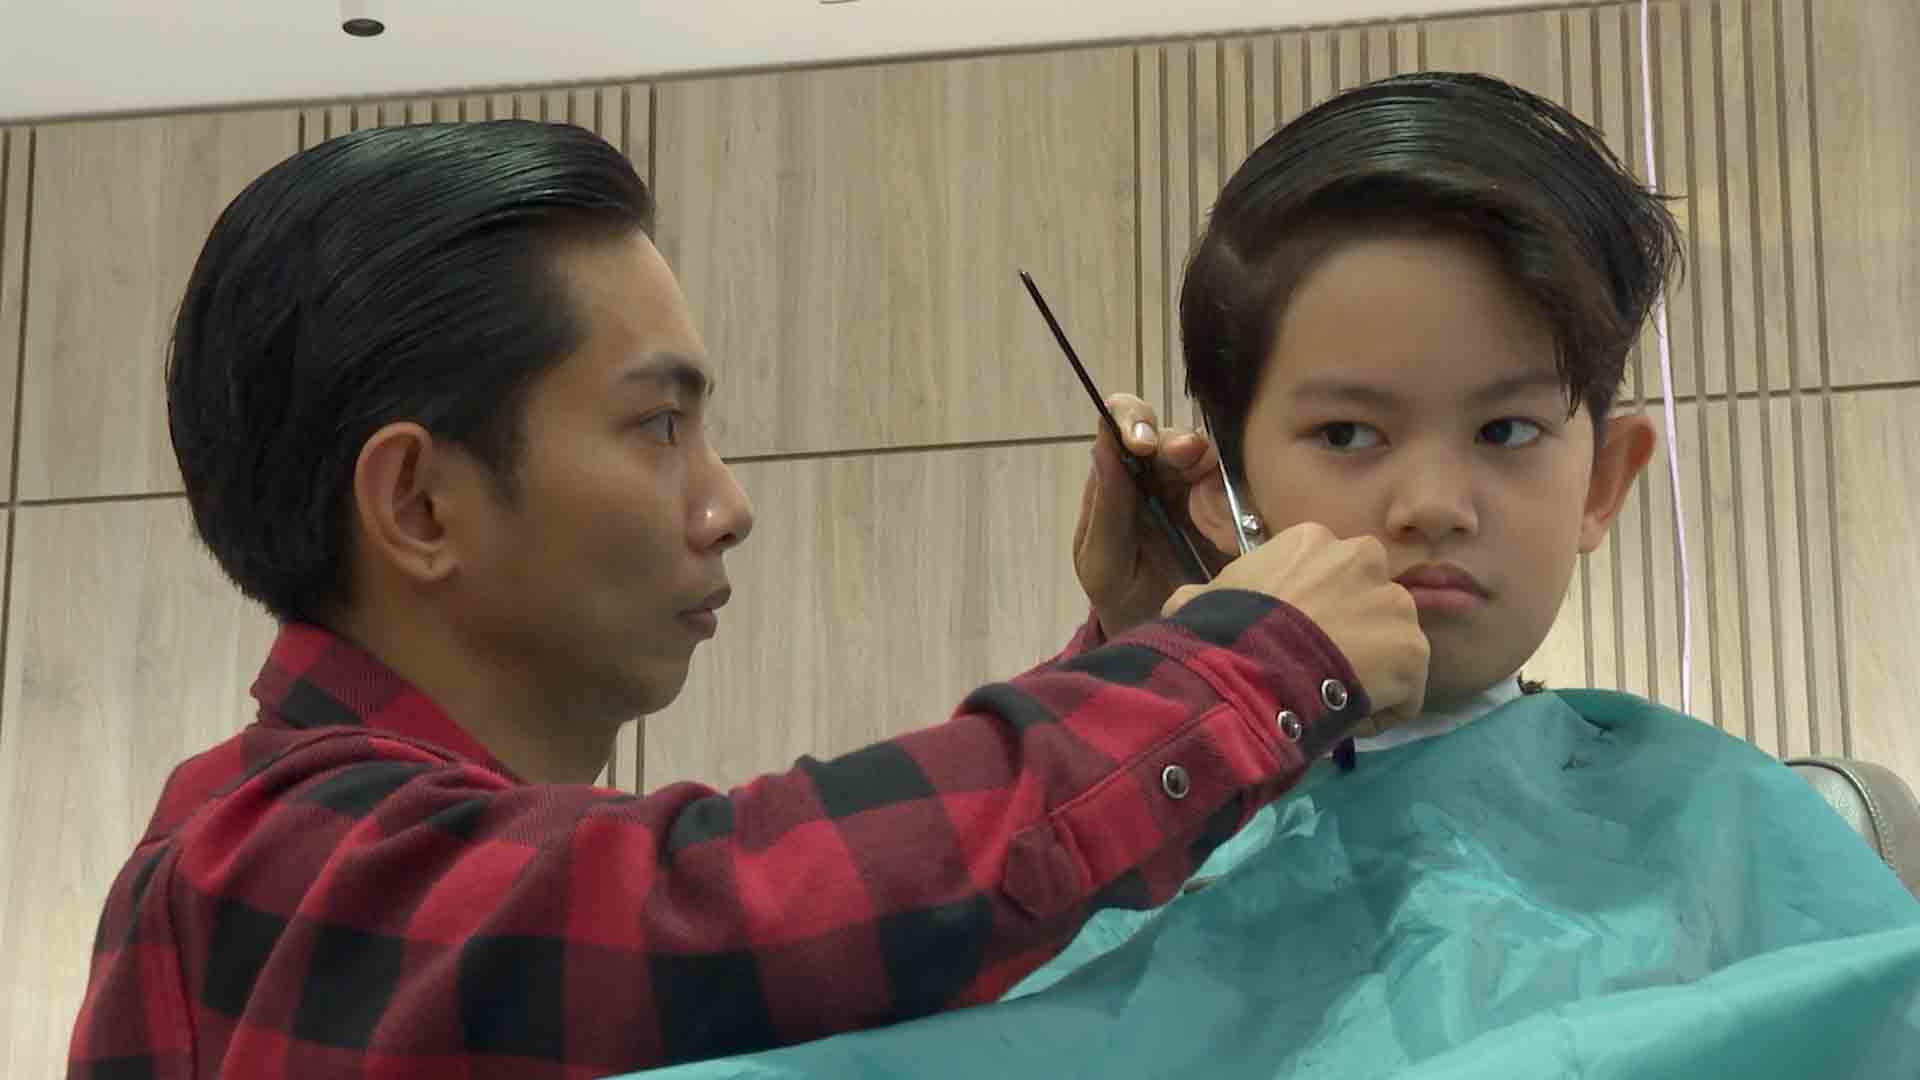 Trong tập này, Phan Hiển còn muốn trổ tài cắt tóc khiến hai con đều bất ngờ. Kiện tướng Dancesport đã hỏi thăm ý kiến và cả Kubi lẫn Anna đều mong muốn anh cắt tóc cho con trai giống V - thành viên nhóm nhạc đình đám BTS.